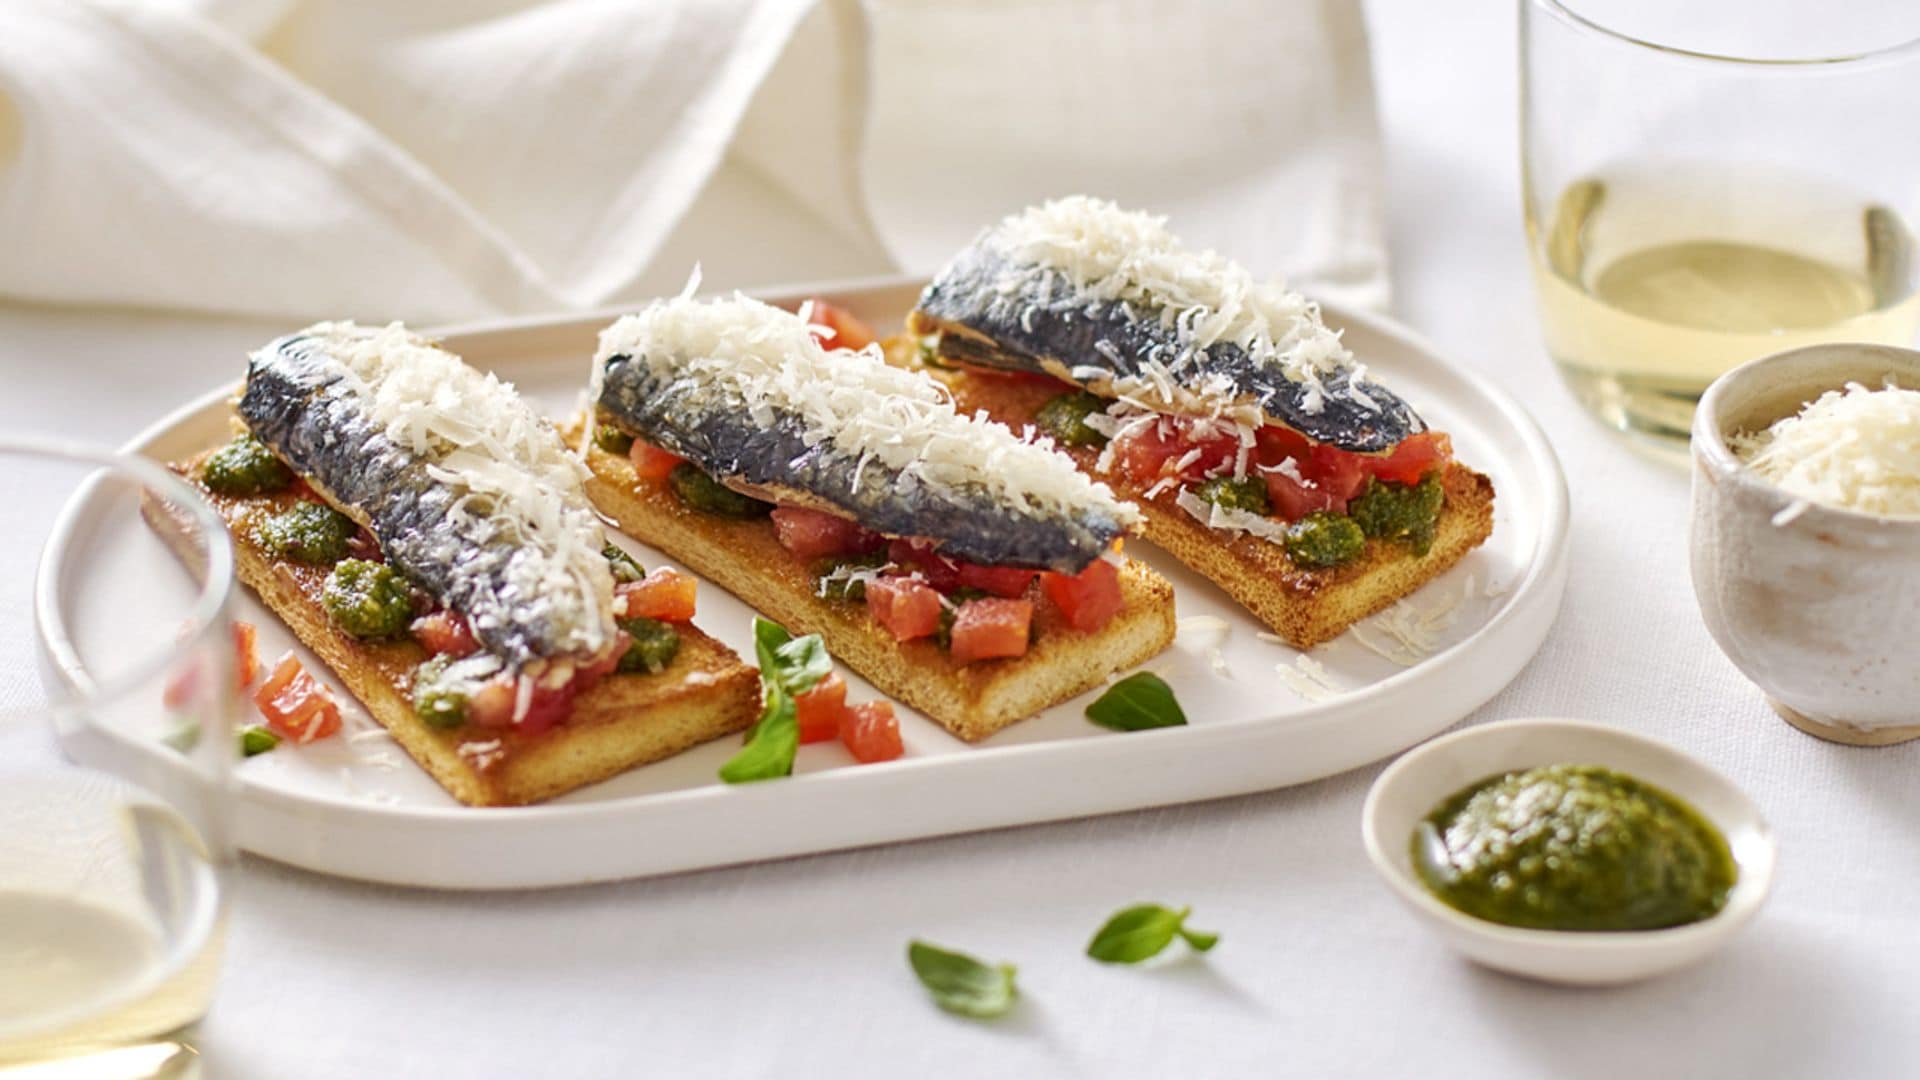 Canapé de sardinas, queso y tomate y pesto